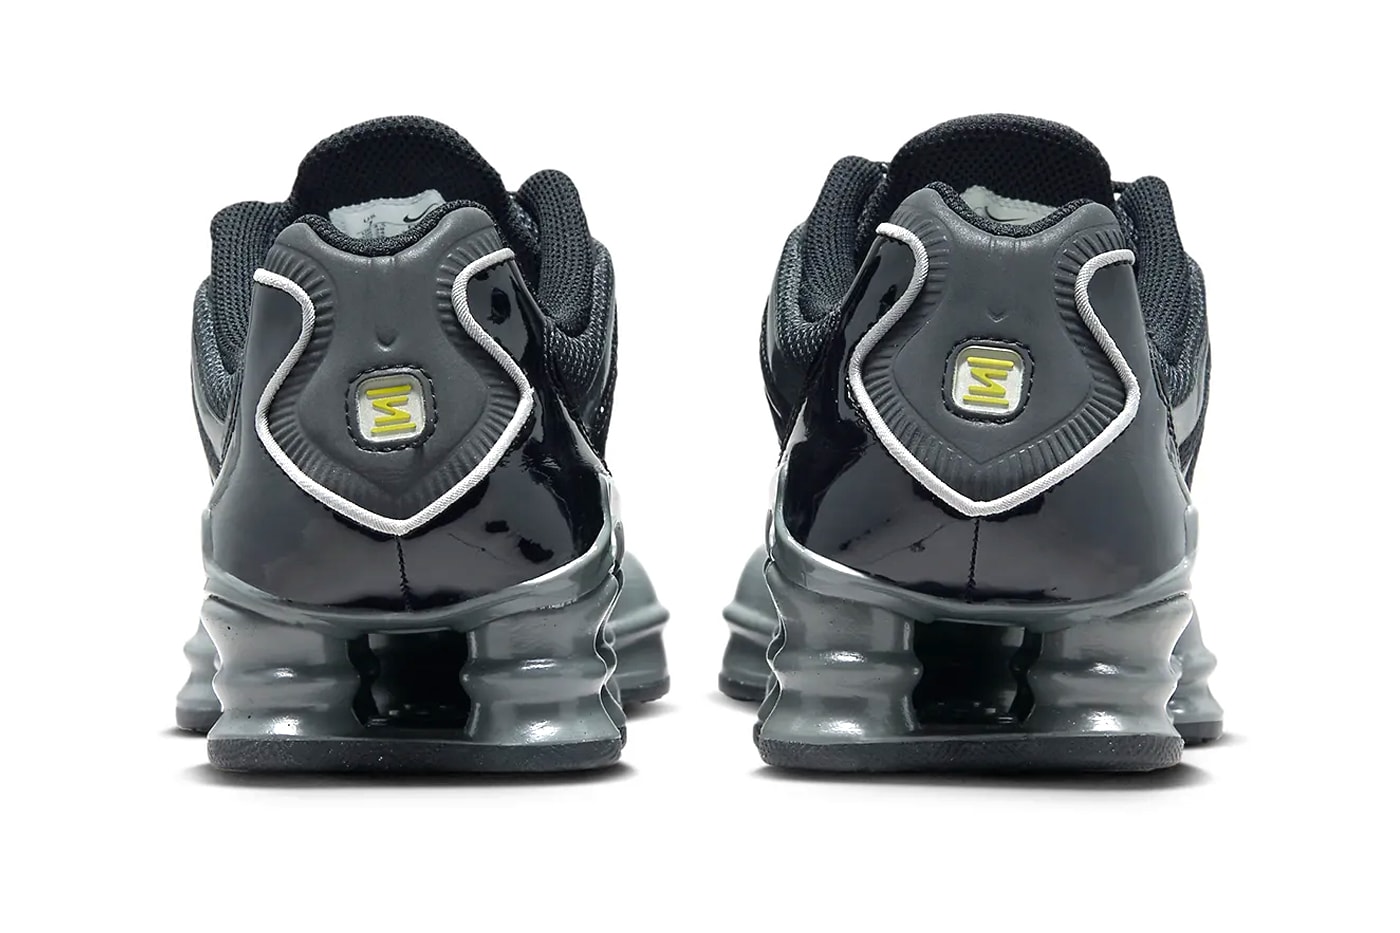 ナイキ ショックス TLから人気カラー “ブラック/グレー”を纏った新作が登場か Nike Shox TL Resurfaces in Sleek "Black/Grey" Colorway FV0939-001 stealthy swoosh technical sneakers martine rose